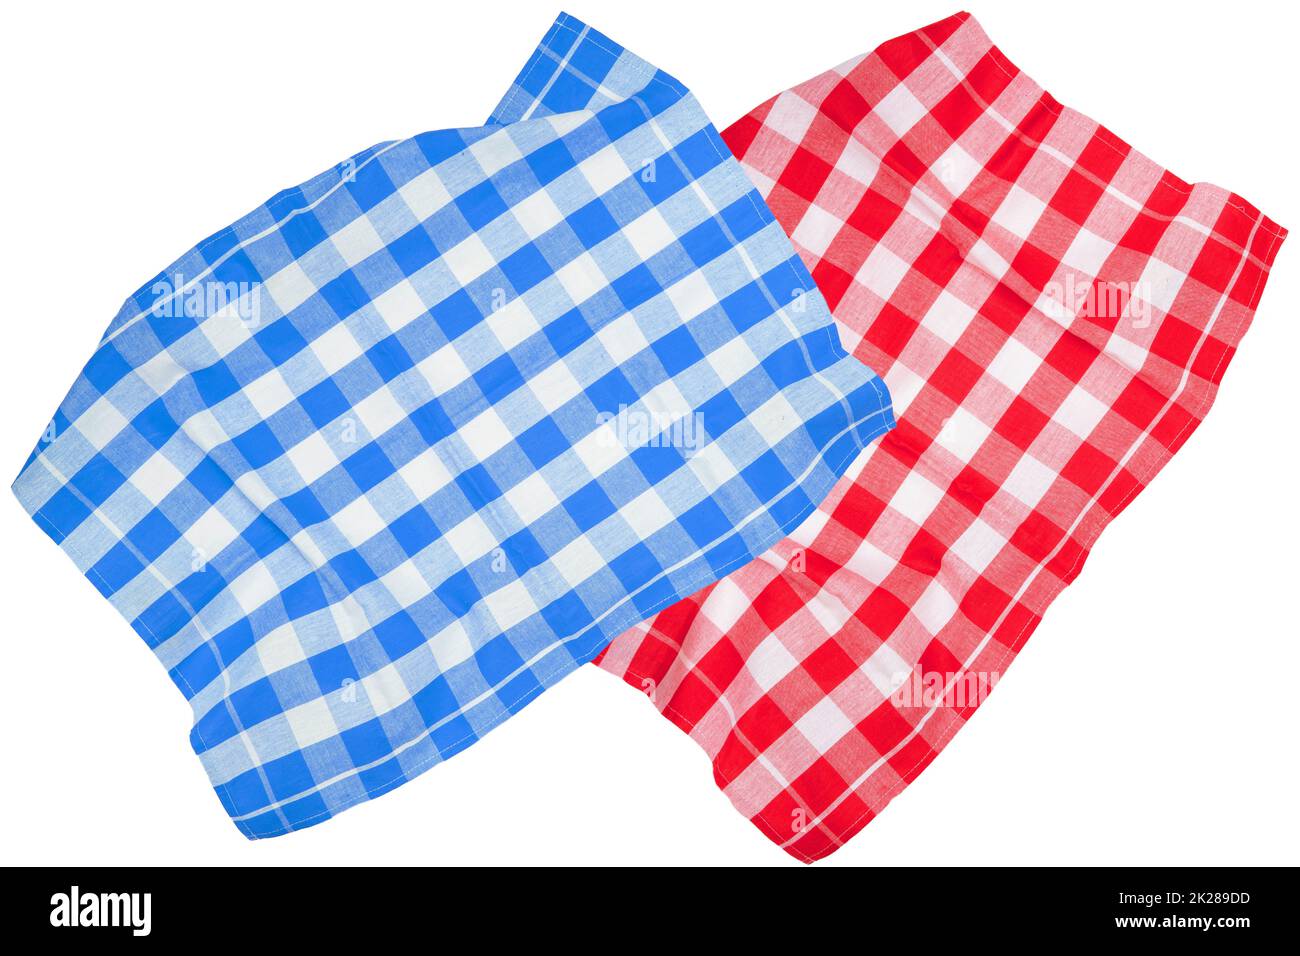 Nahaufnahme einer roten und einer blau-weißen karierten Serviette oder Tischdecke, isoliert auf weißem Hintergrund. Küchenzubehör. Draufsicht. Stockfoto